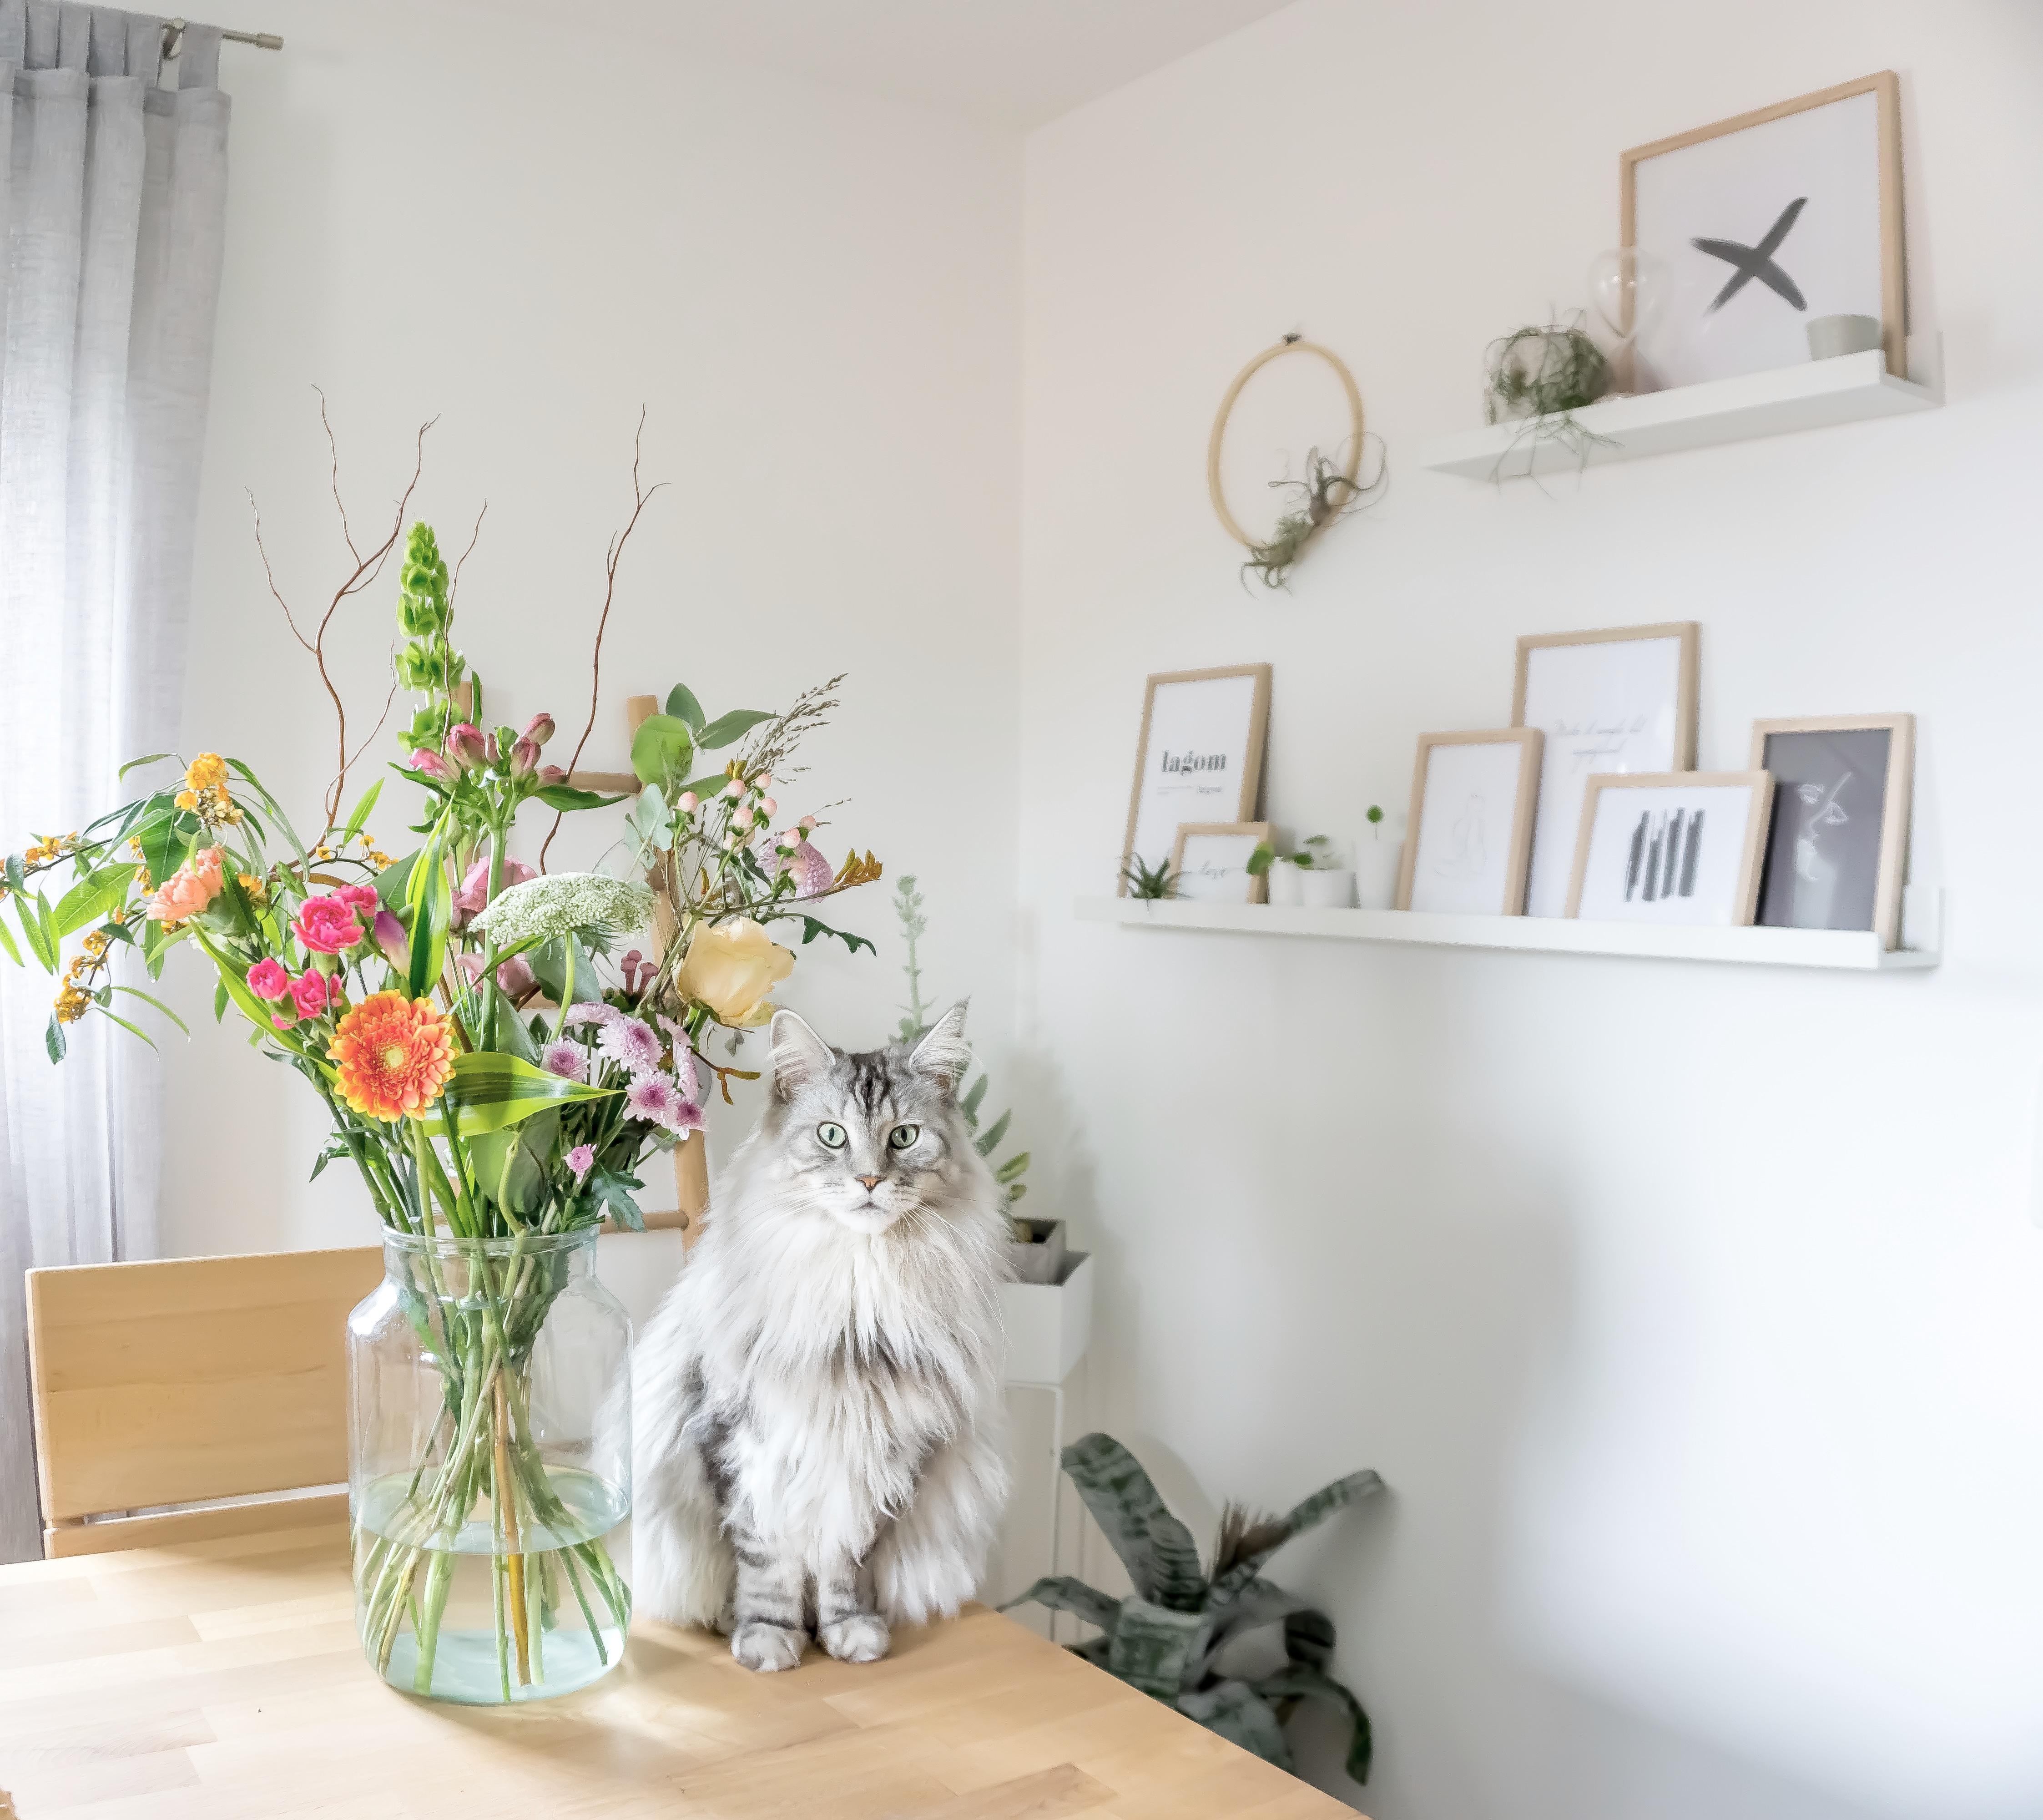 Fynn und Blumen.  Gute Kombi?
#katze #skandi #interior #esszimmer #wohnen #holz #blumen